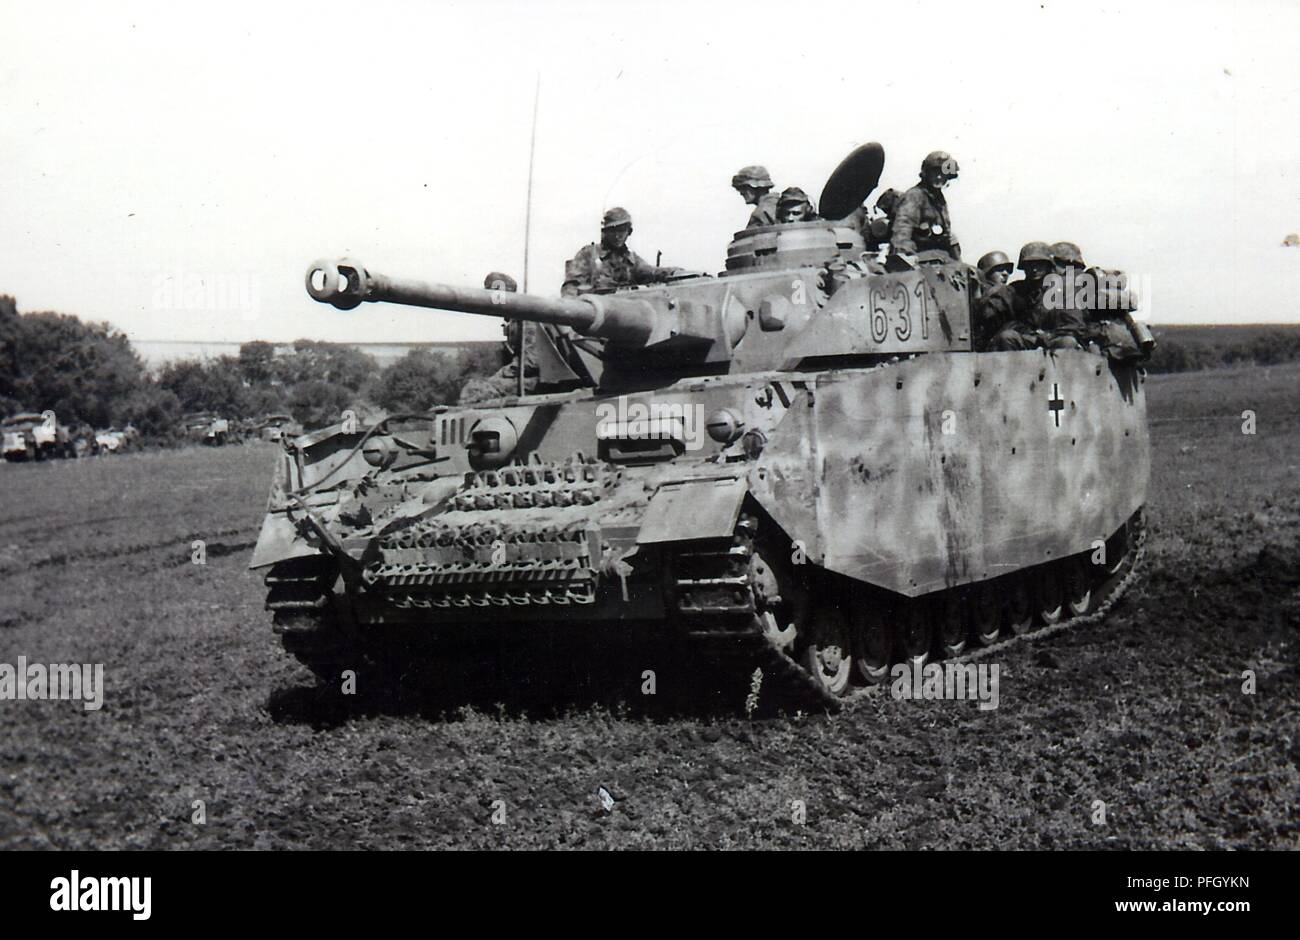 Waffen-SS Grenadiere an Bord eines Panzer IV AusfH mit seitlichen umsäumen den Tank und die grenadiere sind vom 3. SS Panzer Division Totenkopf das Foto Termine Juni 1943 von der Ostfront Stockfoto